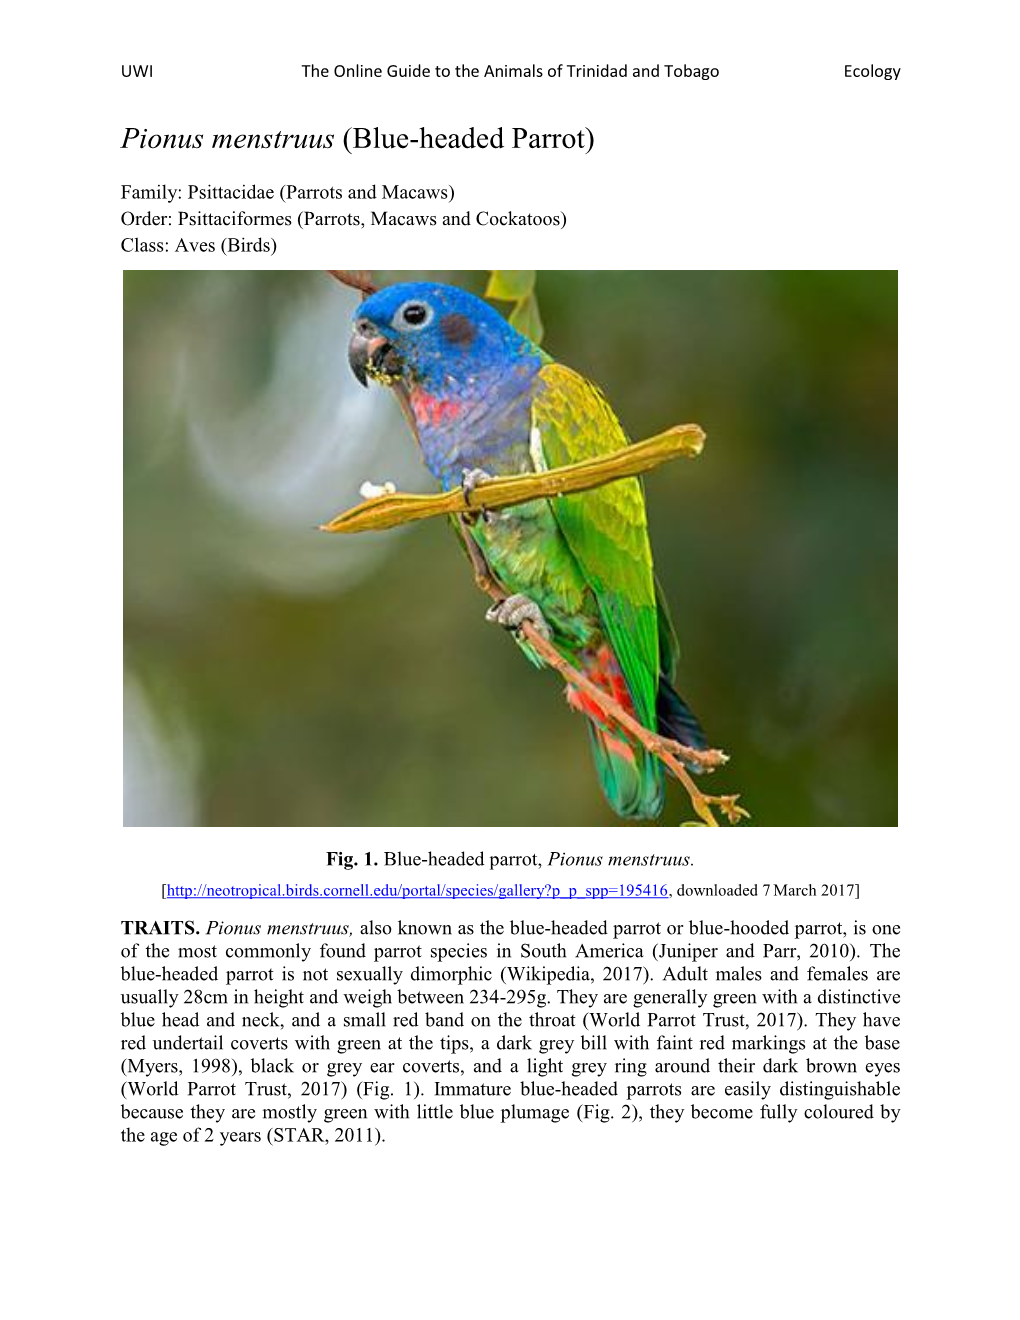 Pionus Menstruus (Blue-Headed Parrot)